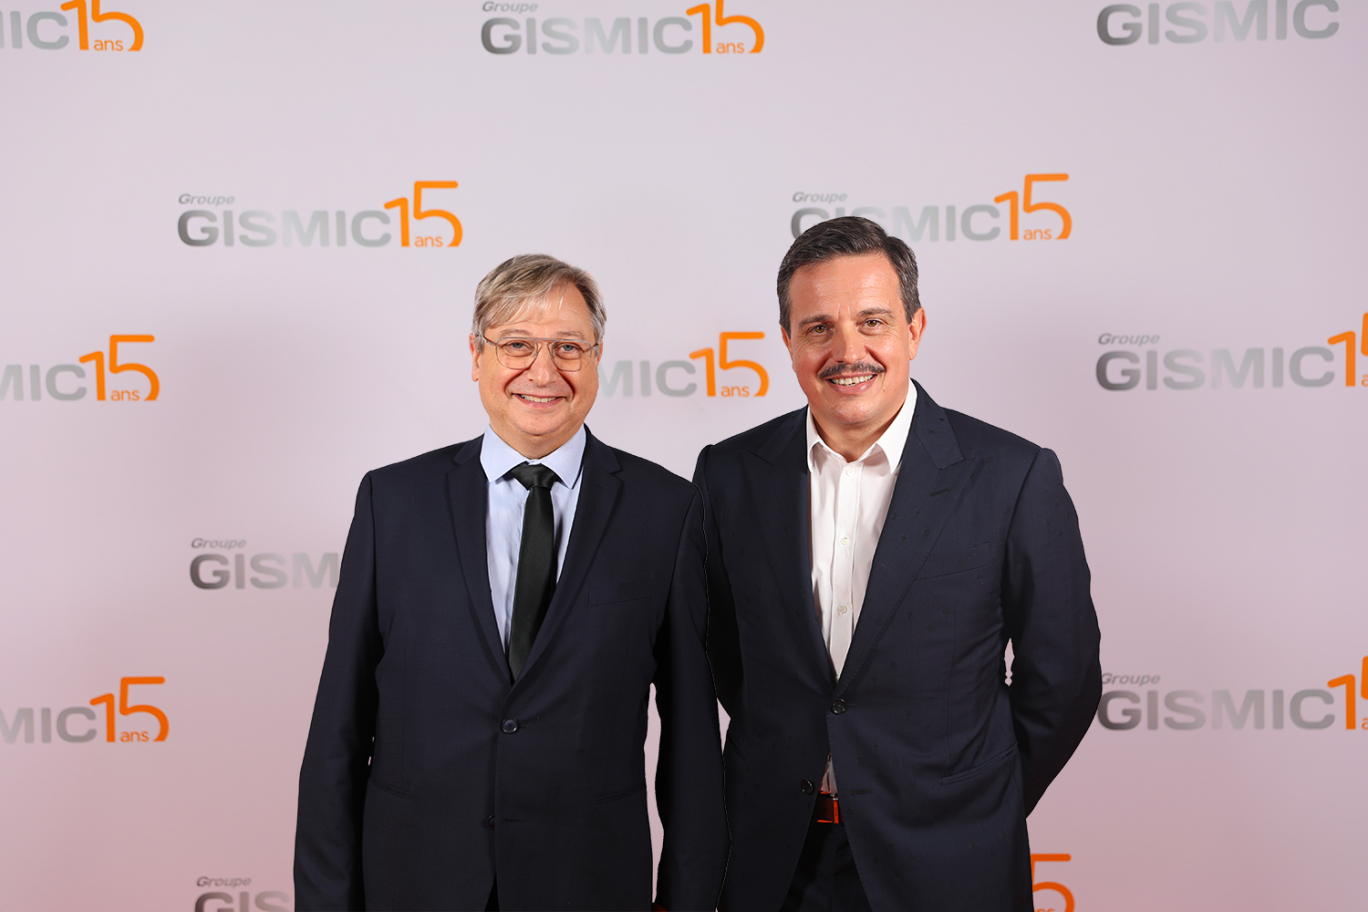 Jean-Marc Chery, PDG du groupe Gismic, aux côtés de François Grosdidier, maire de Metz et président de l'Eurométropole de Metz. © Gismic. 